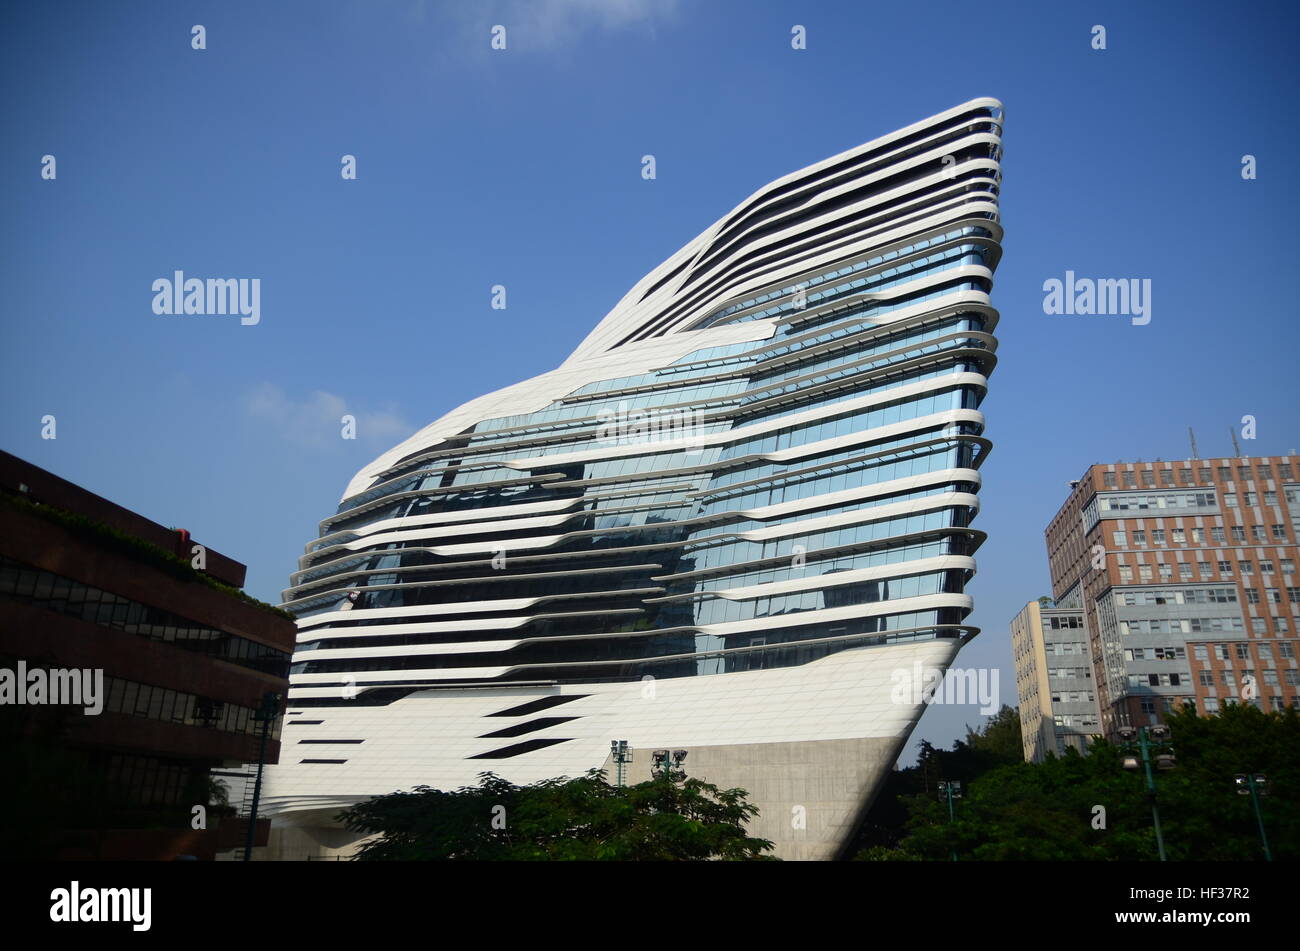 Hong Kong, China - November 24, 2014: Modern University Building by Zaha Hadid Architects Stock Photo